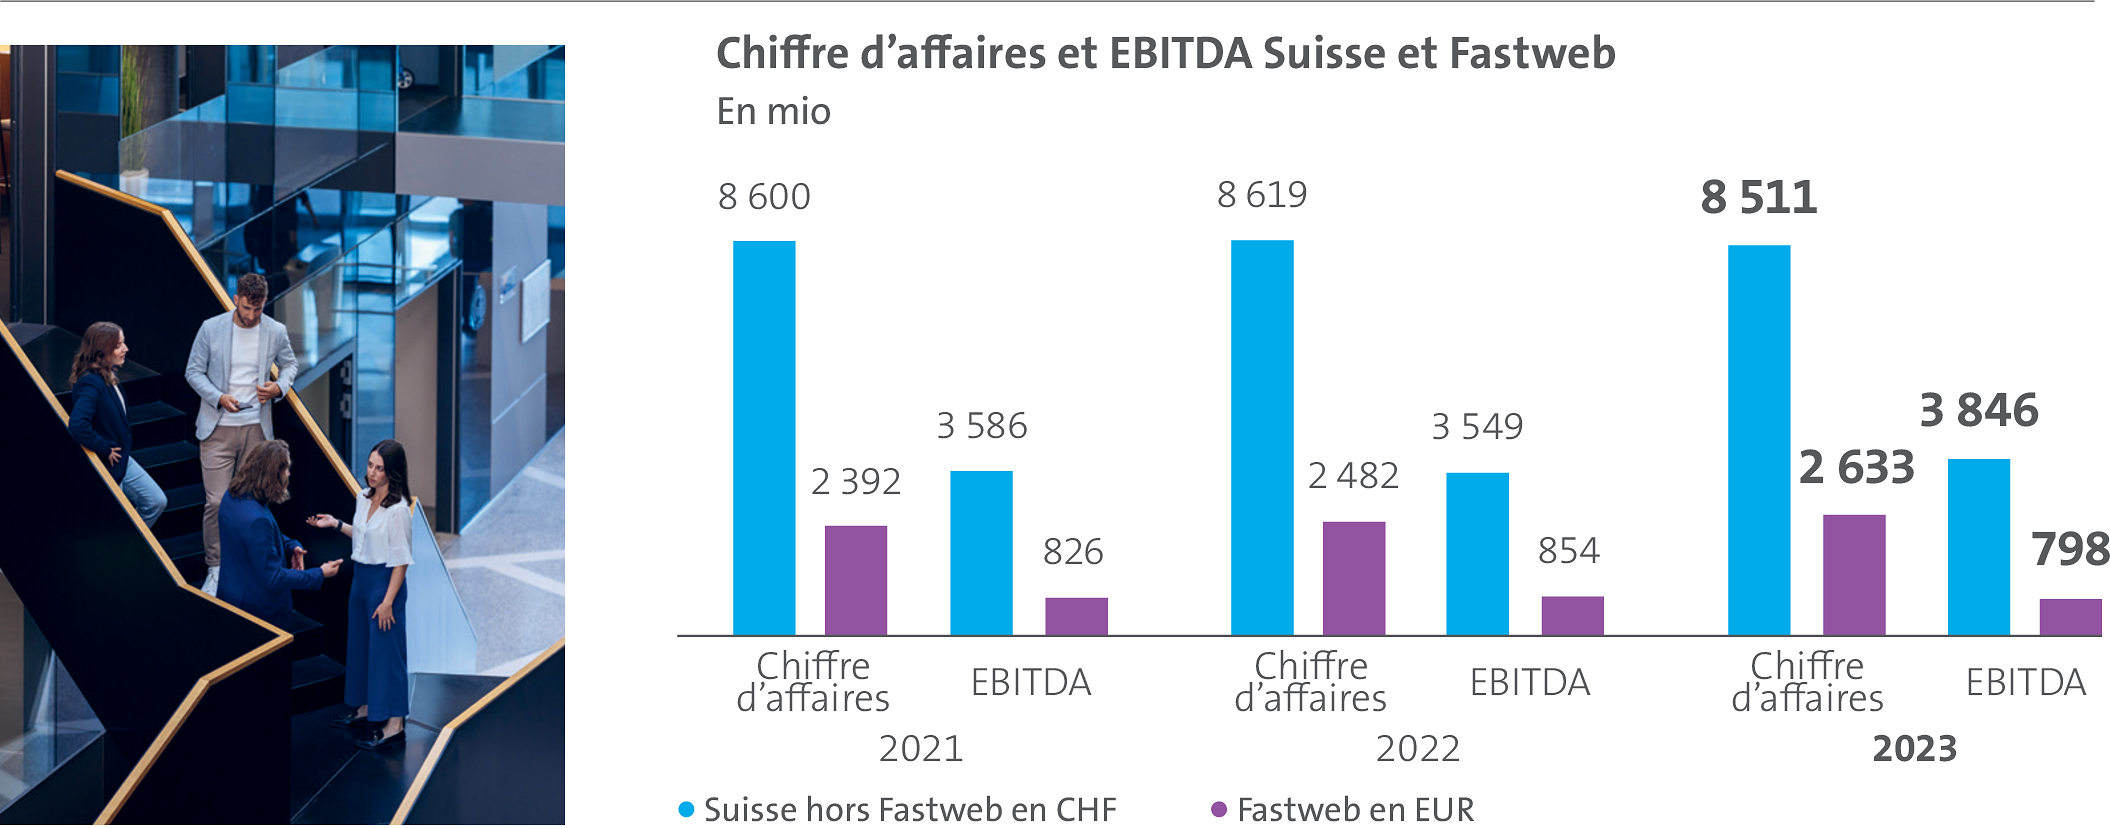 L’histogramme représente le chiffre d’af­faires et l’EBITDA de la Suisse et de Fastweb au cours des trois dernières années.